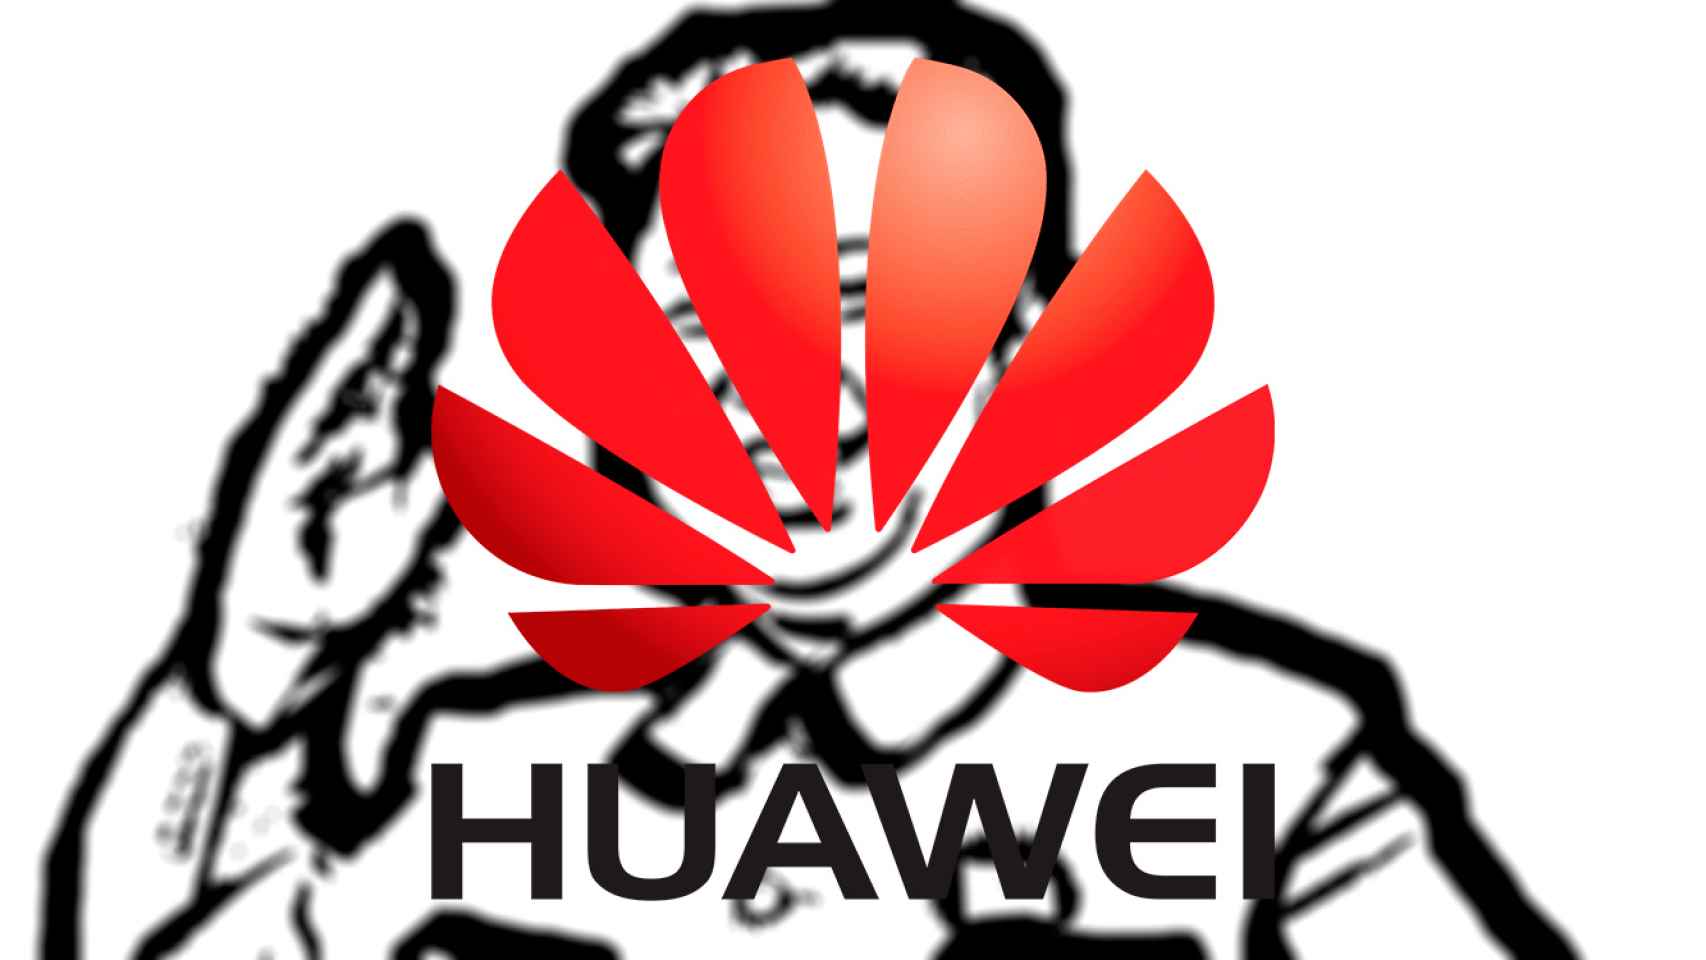 China-Huawei